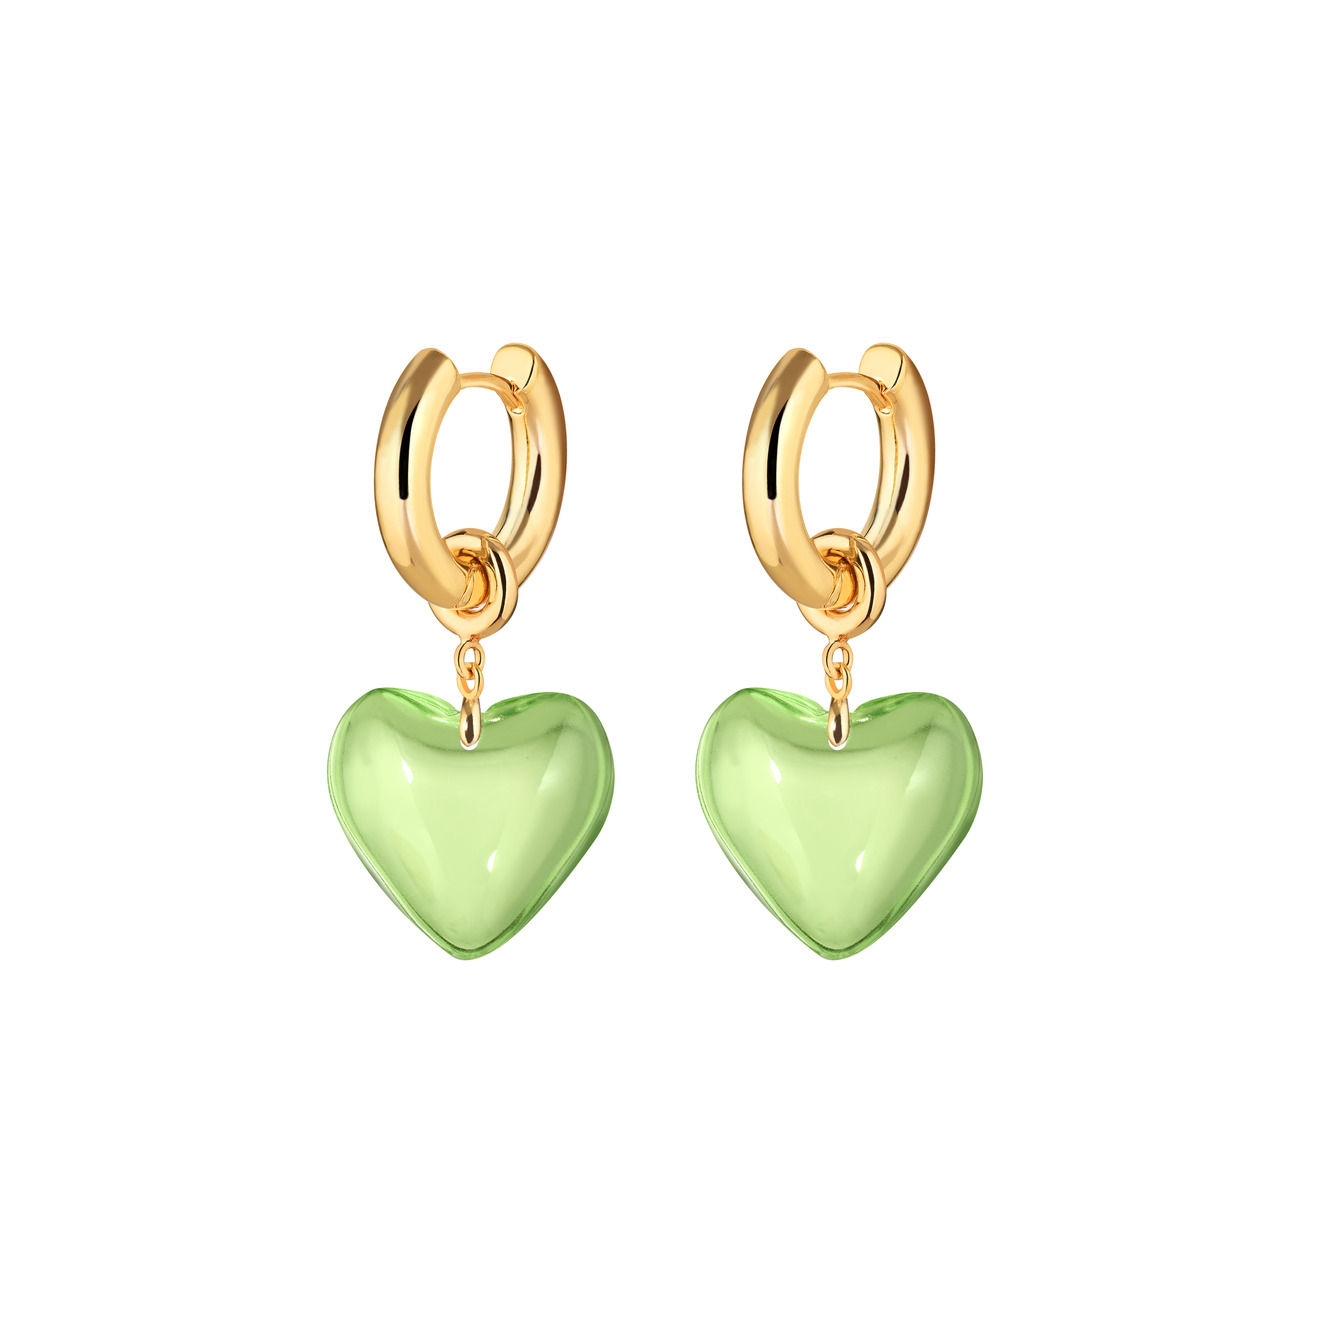 Kotlo Studio Золотистые серьги Sweetheart с зелеными сердцами aqua золотистые серьги с белыми подвесками сердцами